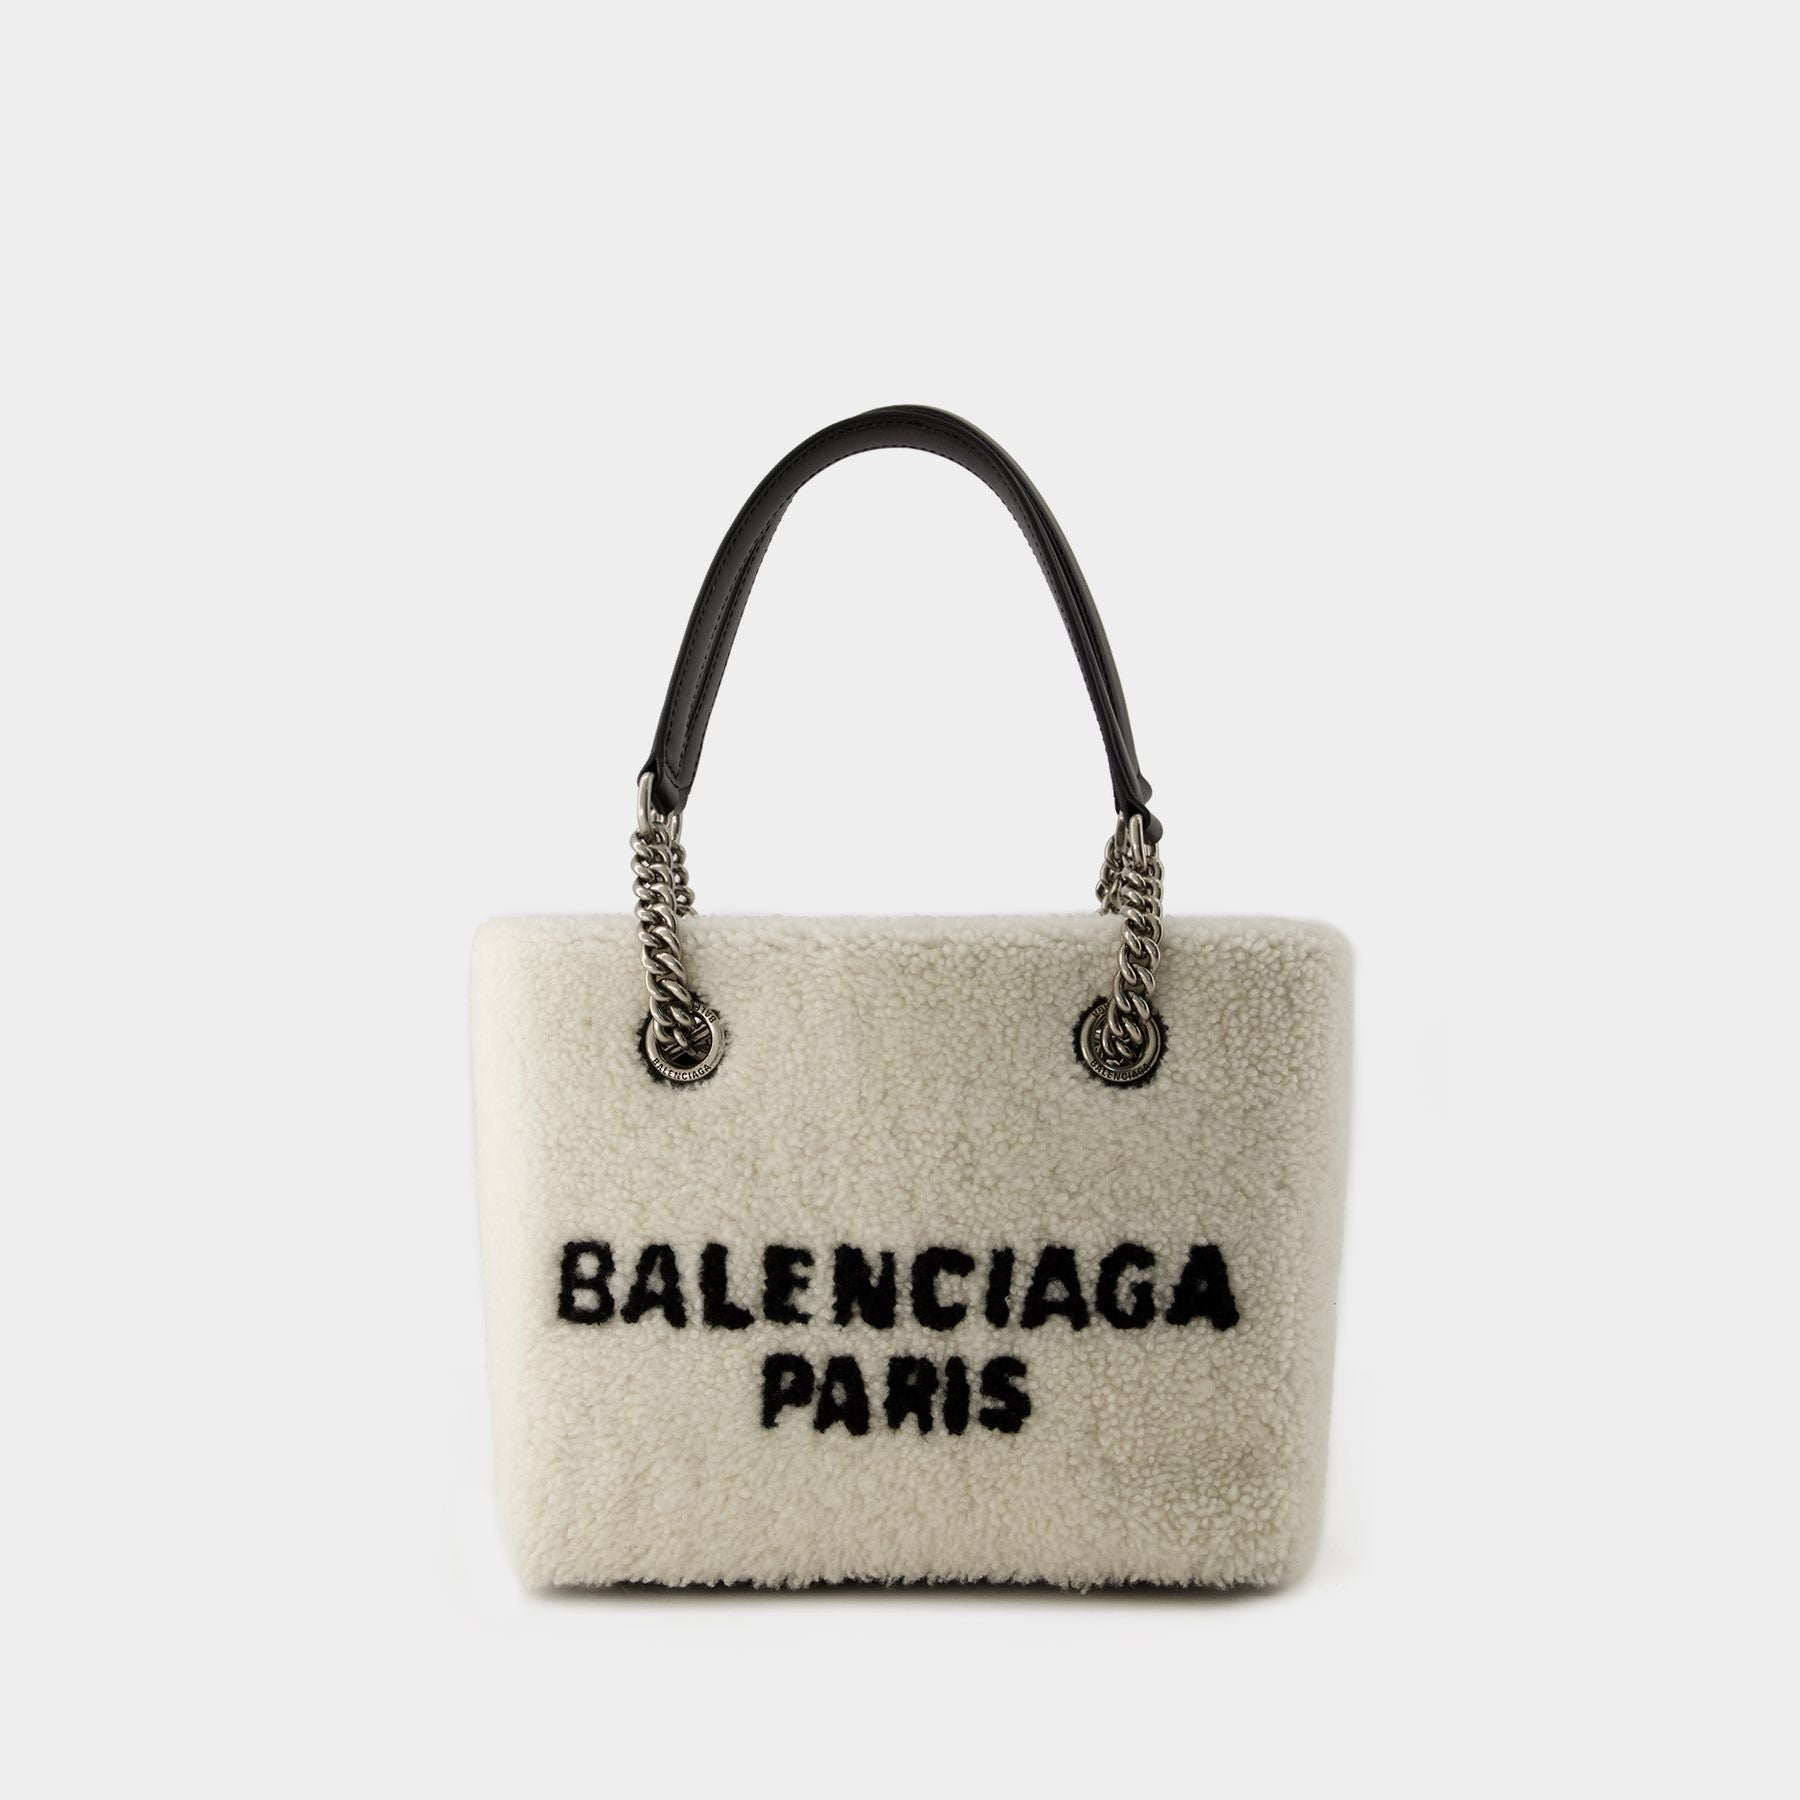 Balenciaga Women's bags | MONNIER Freres